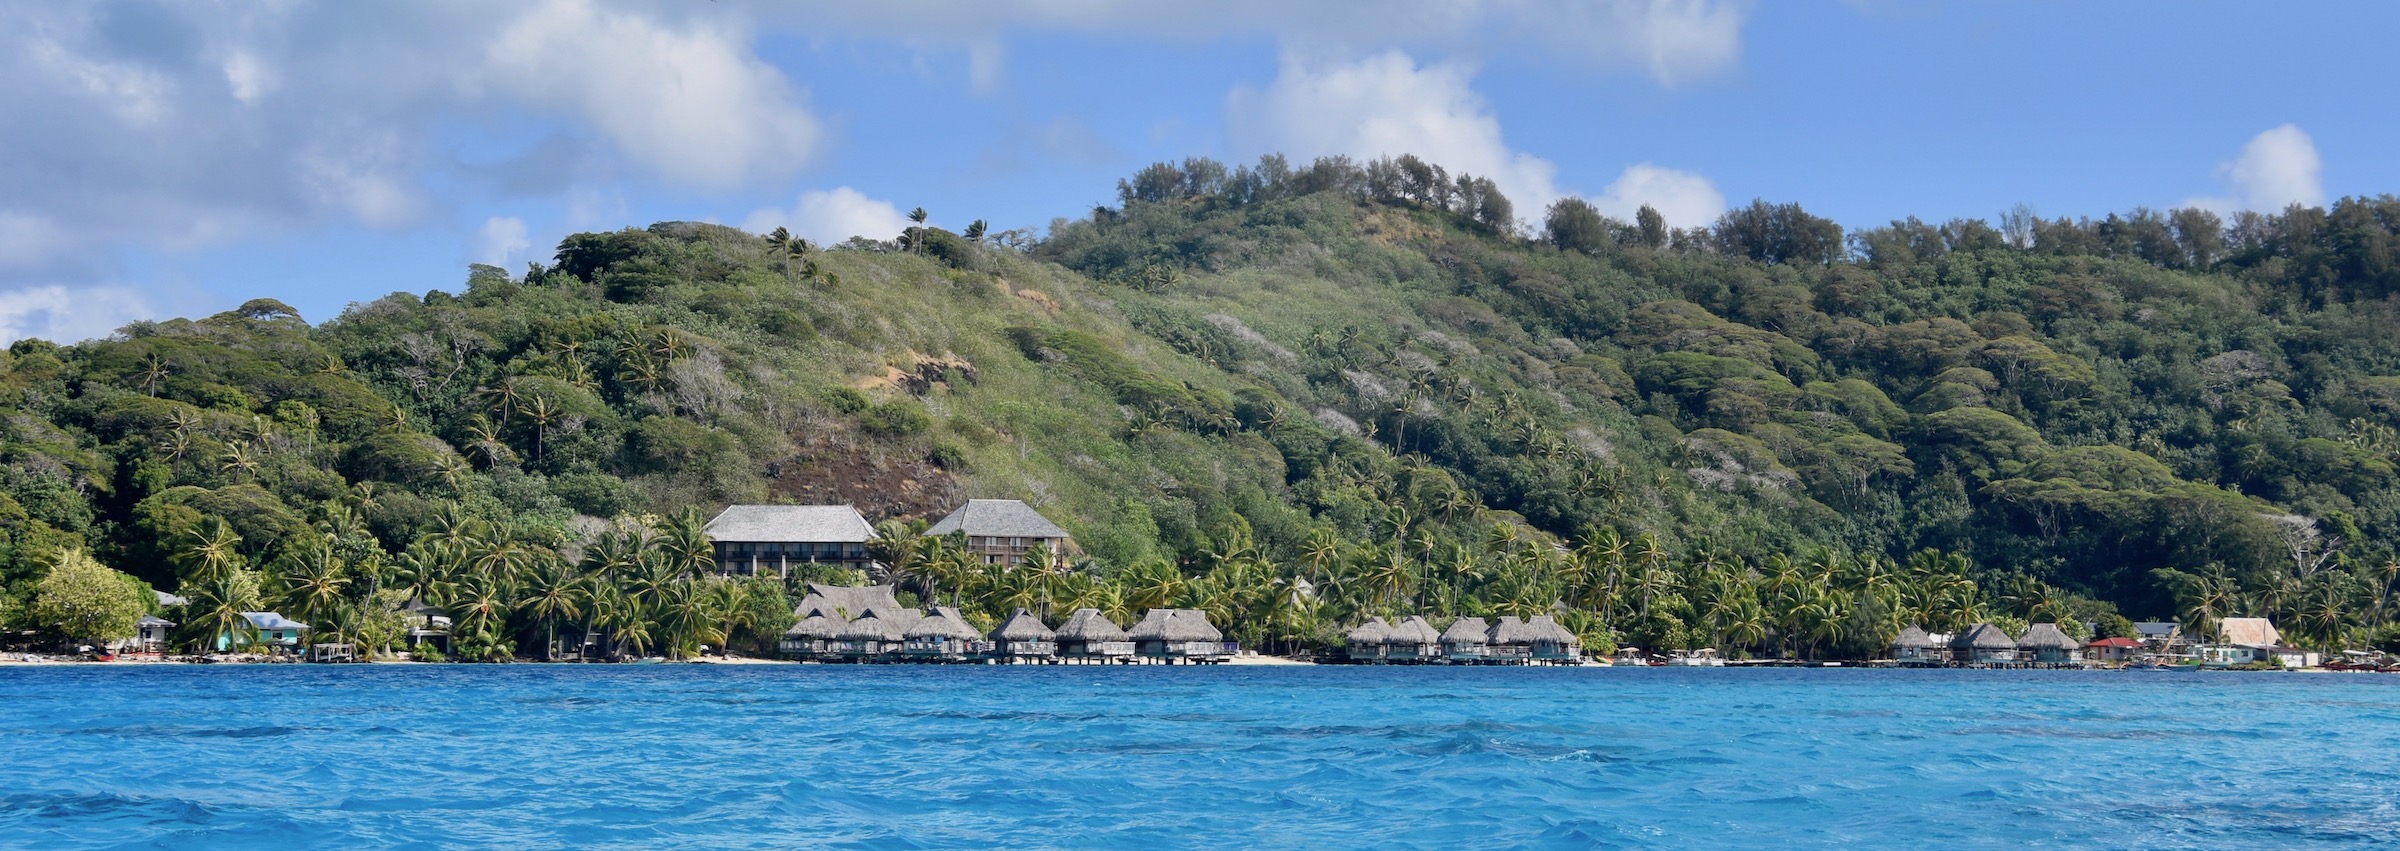 Maitai Resort from the Water, Bora Bora